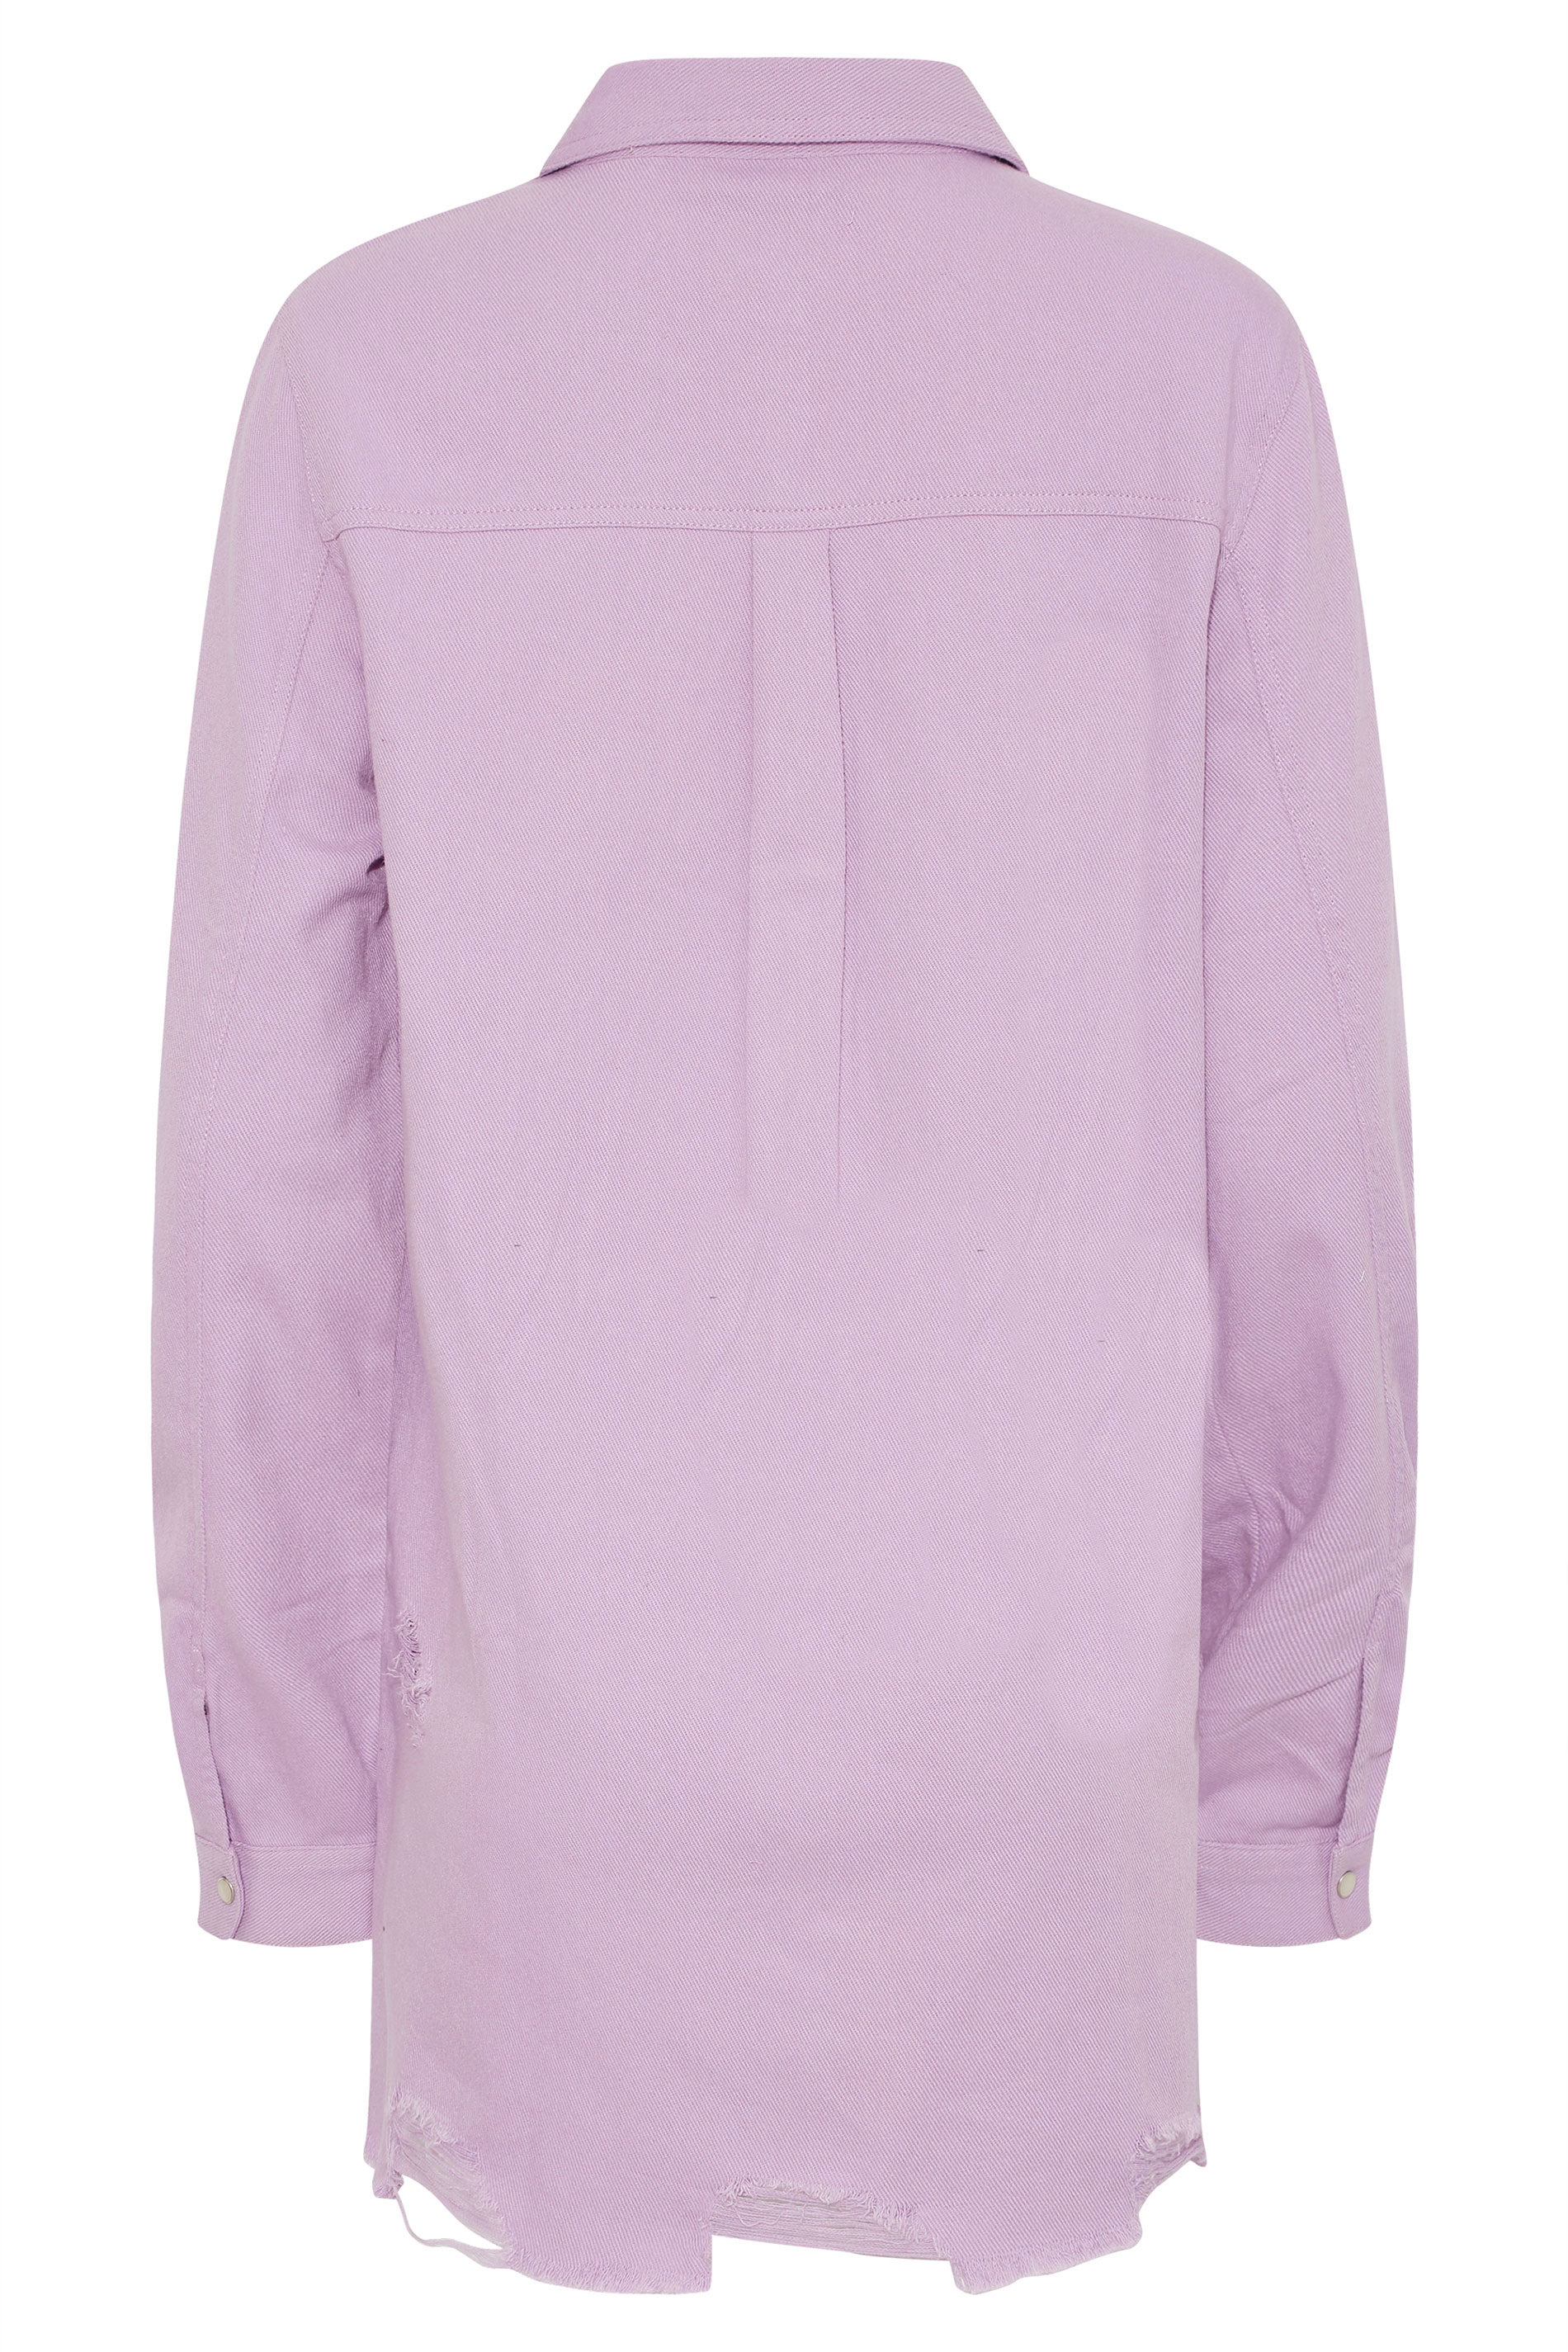 LTS Tall Women's Lilac Purple Distressed Twill Shirt | Long Tall Sally 3